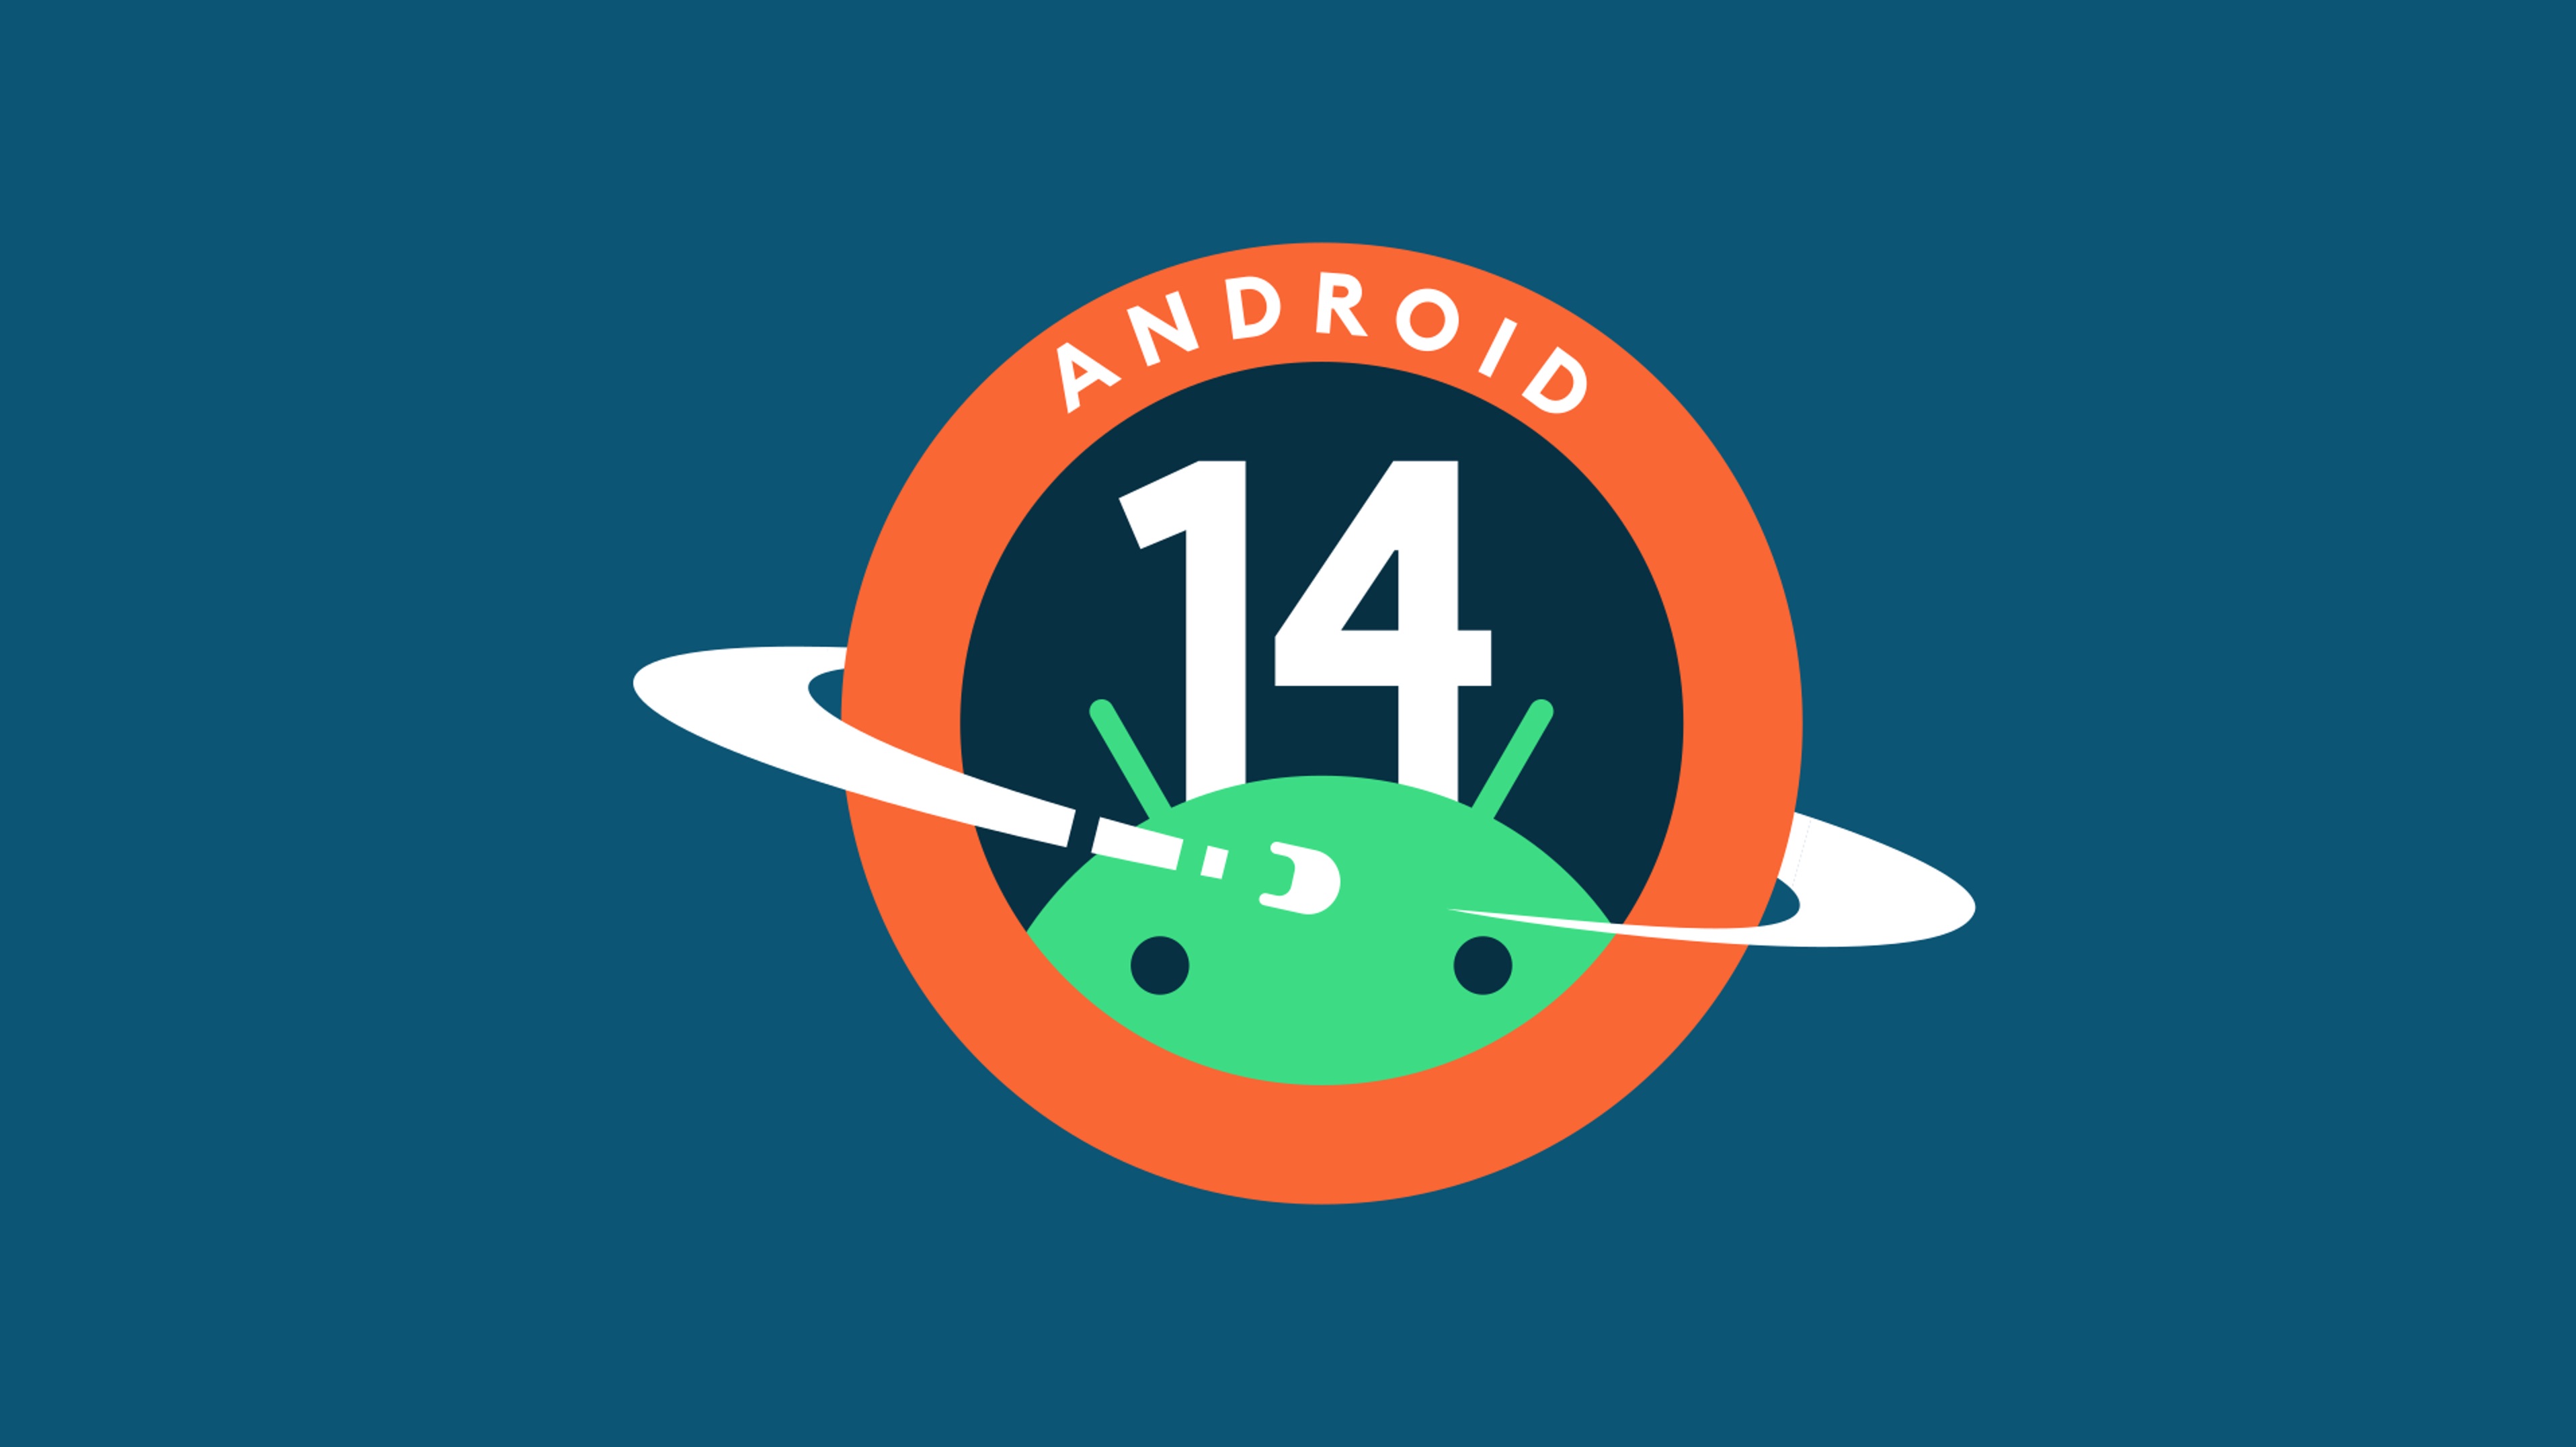 Google I/O 2023: Google công bố Android 14 và WearOS 4, ra mắt cuối năm nay